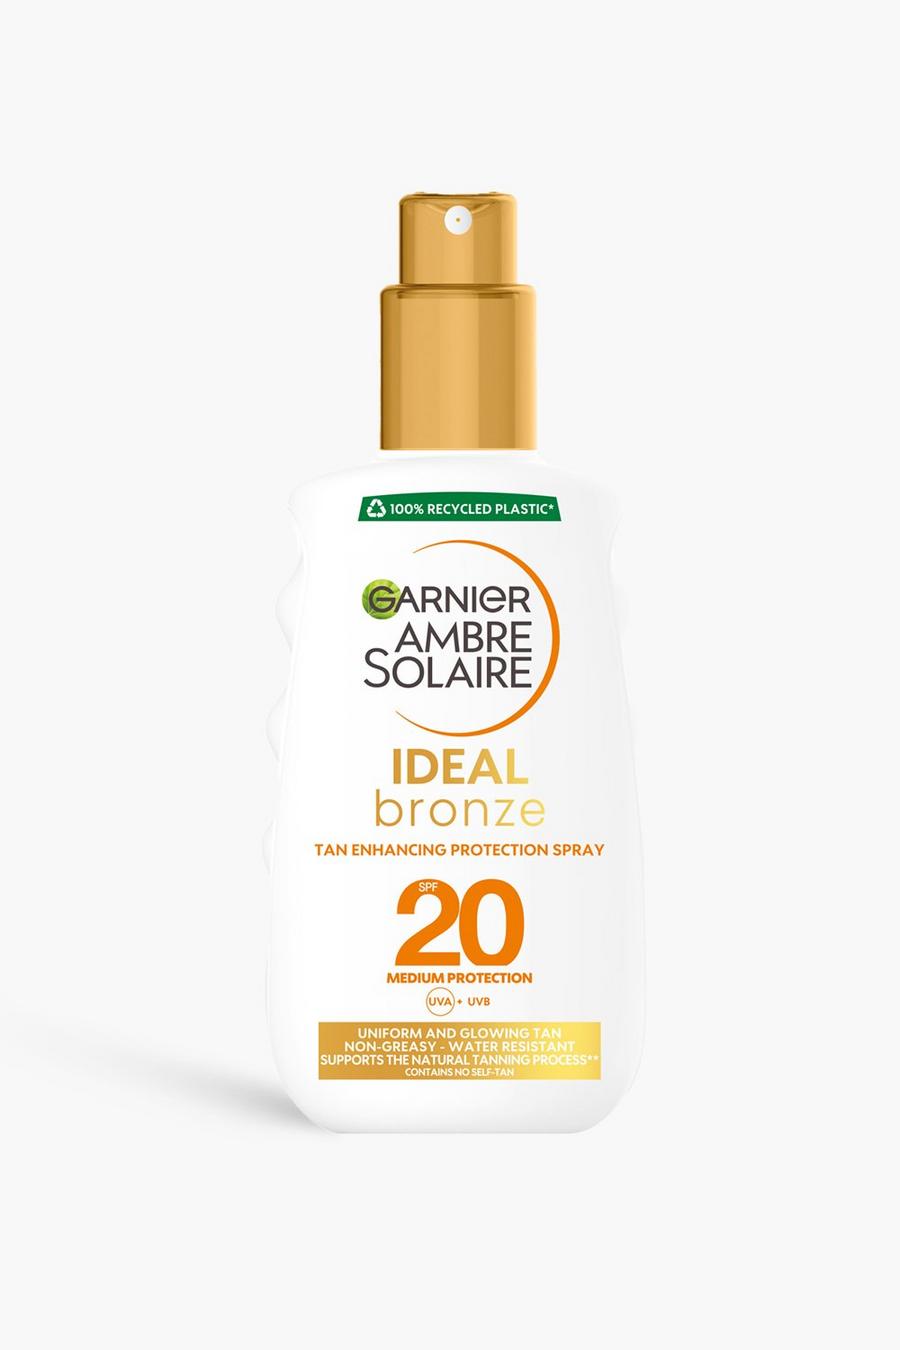 White blanco Garnier Ambre Solaire Ideal Bronze Protective Sun Cream Spray SPF20, High Sun Protection Factor 20,  200ml (SAVE 32%)